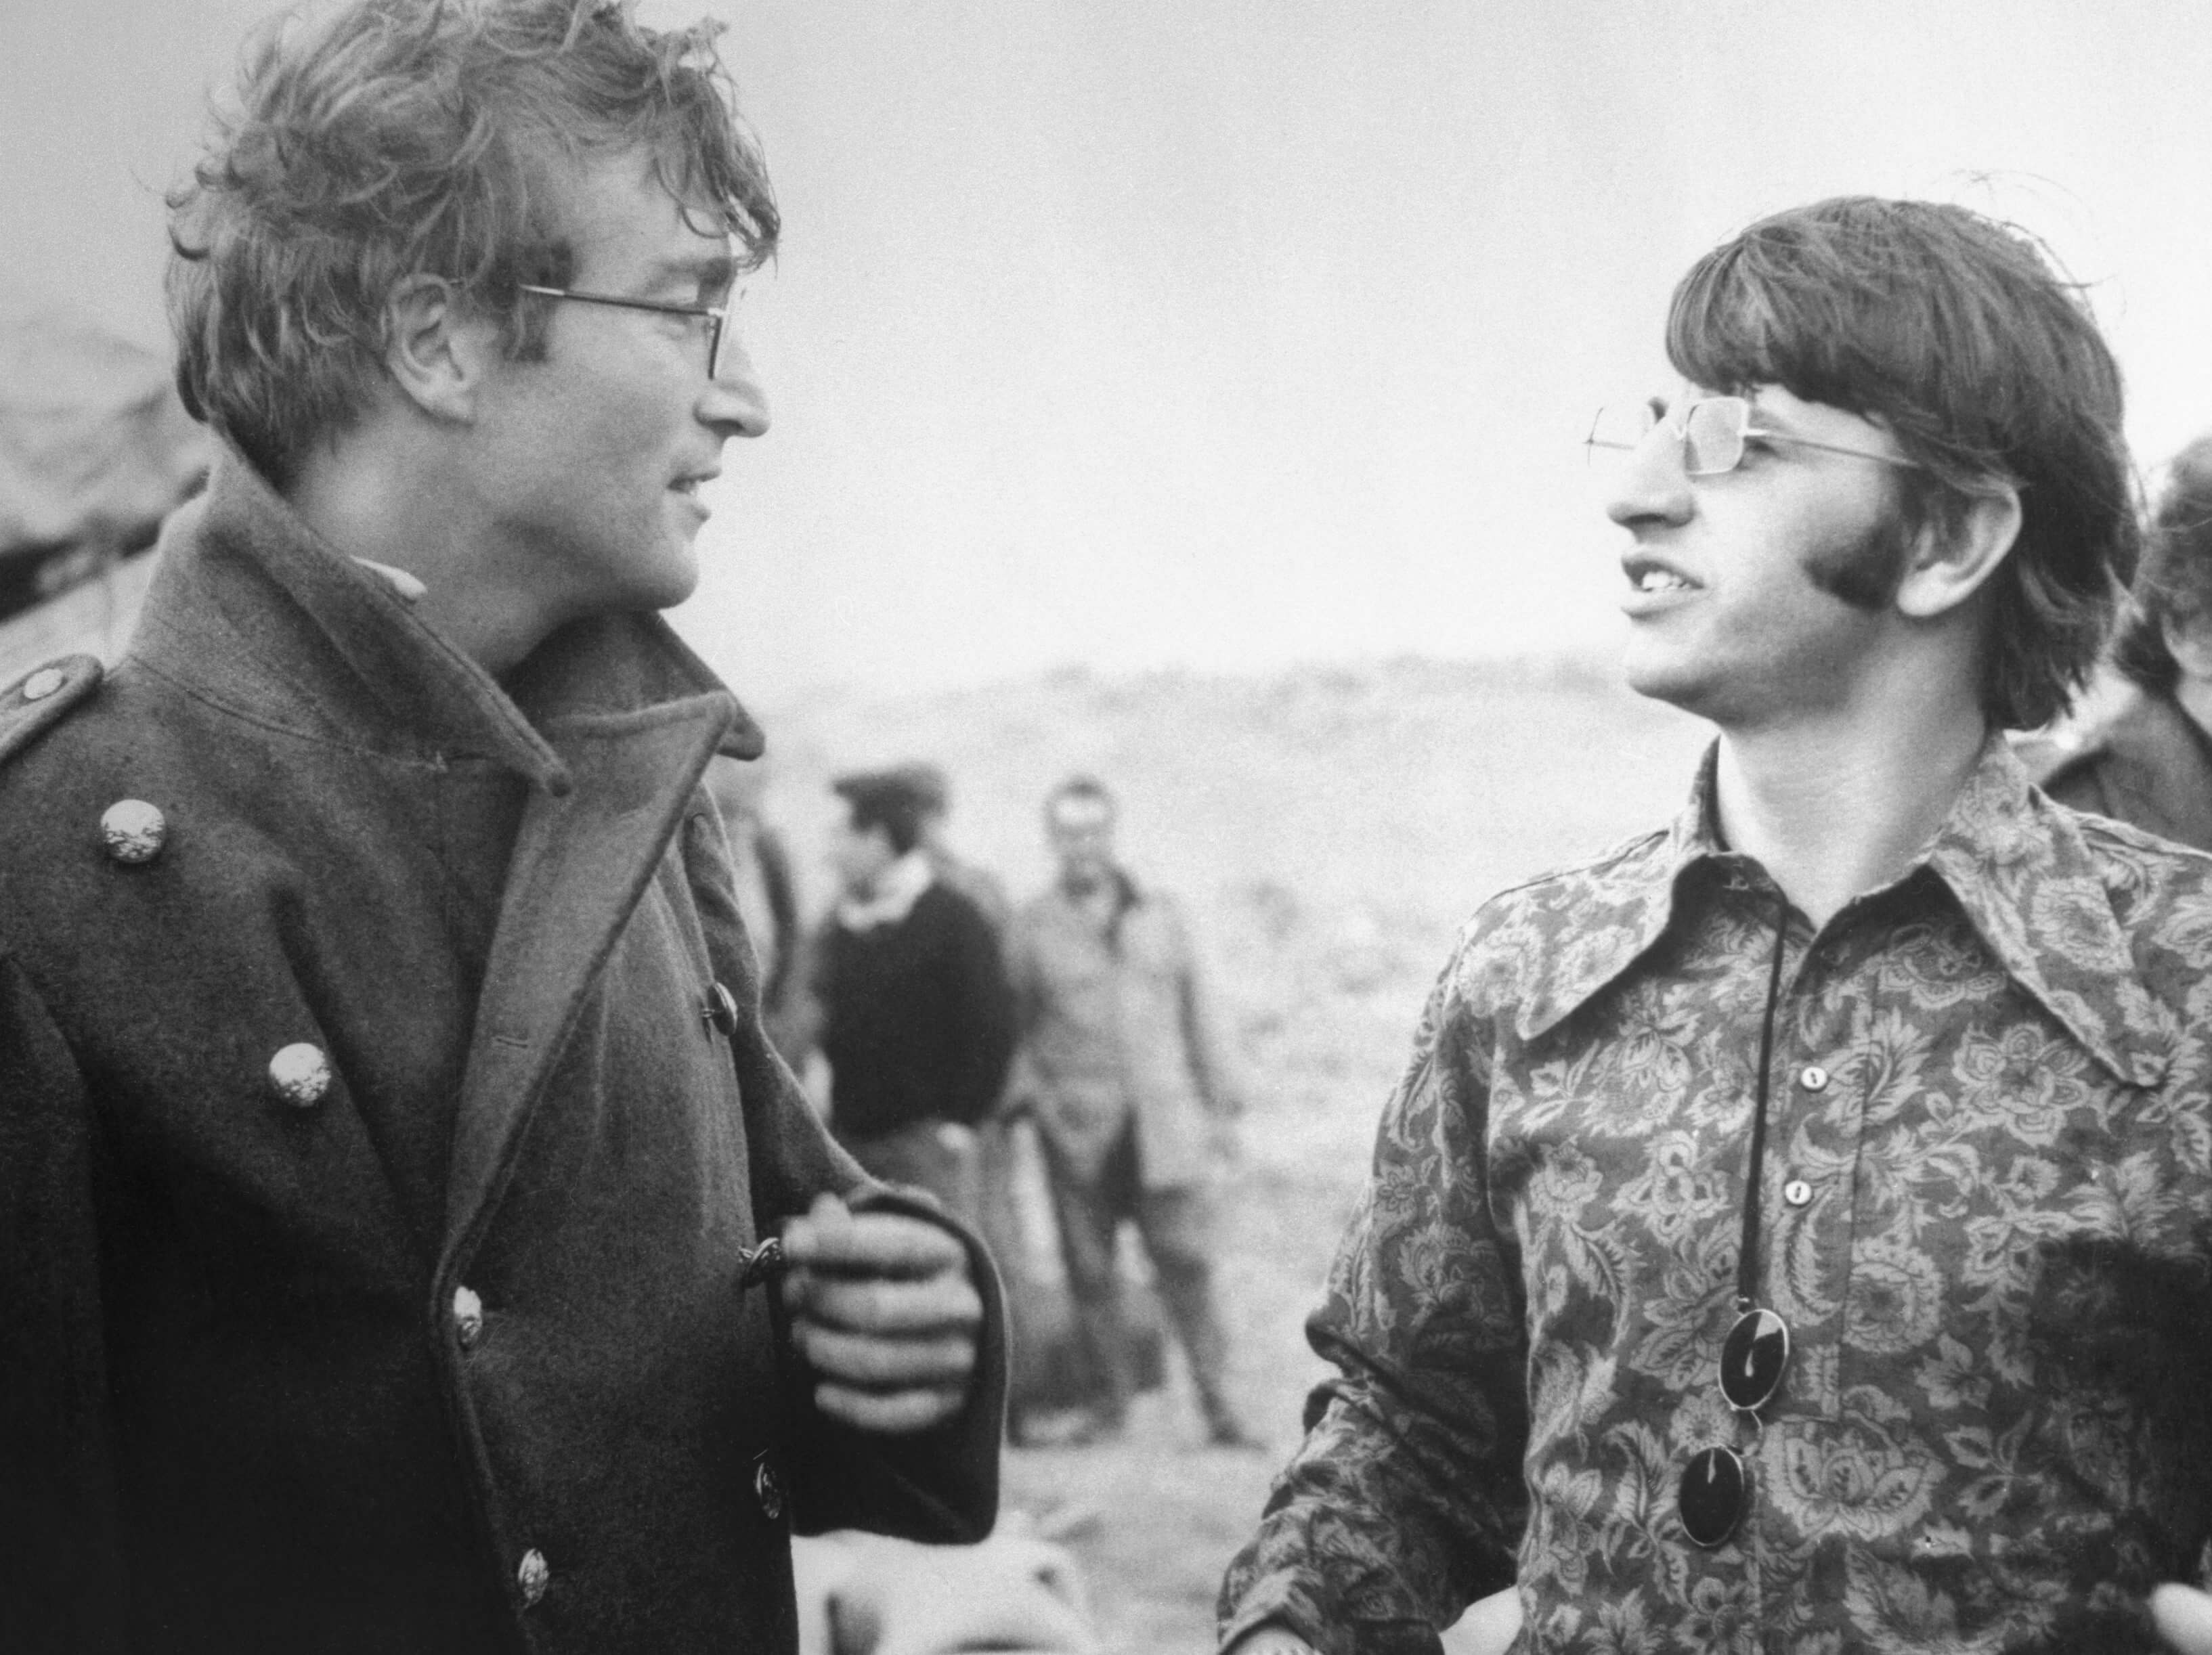 John Lennon and Ringo Starr in black-and-white